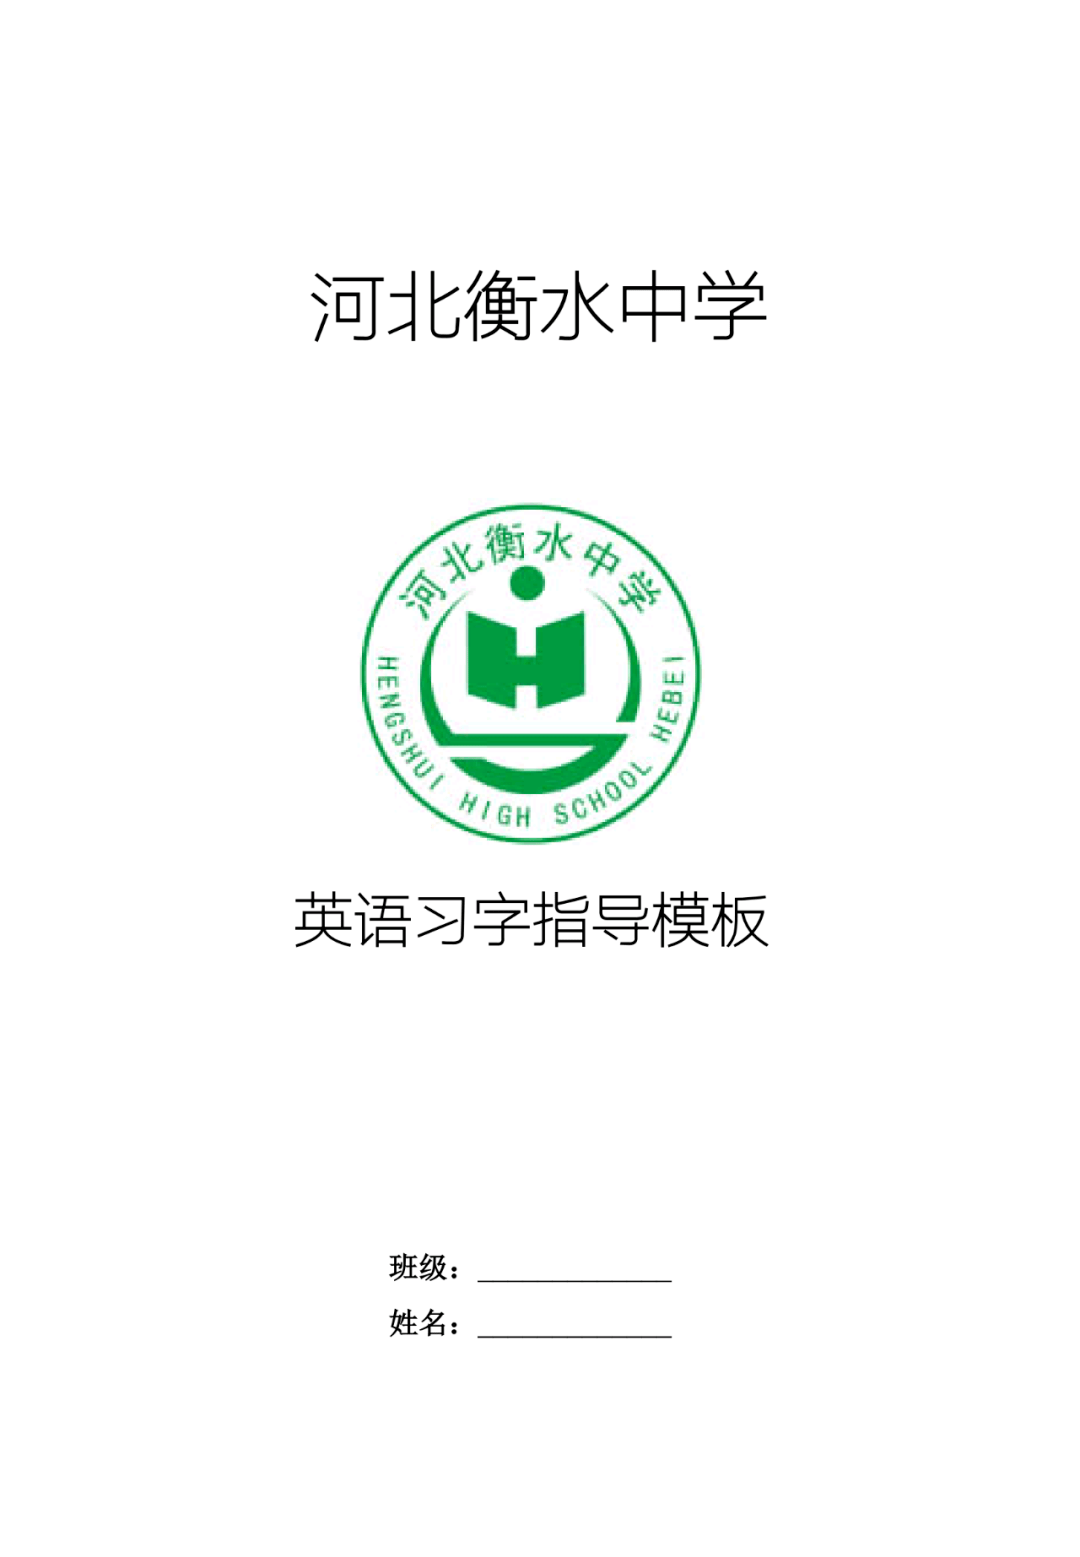 河北衡济中学校徽图片